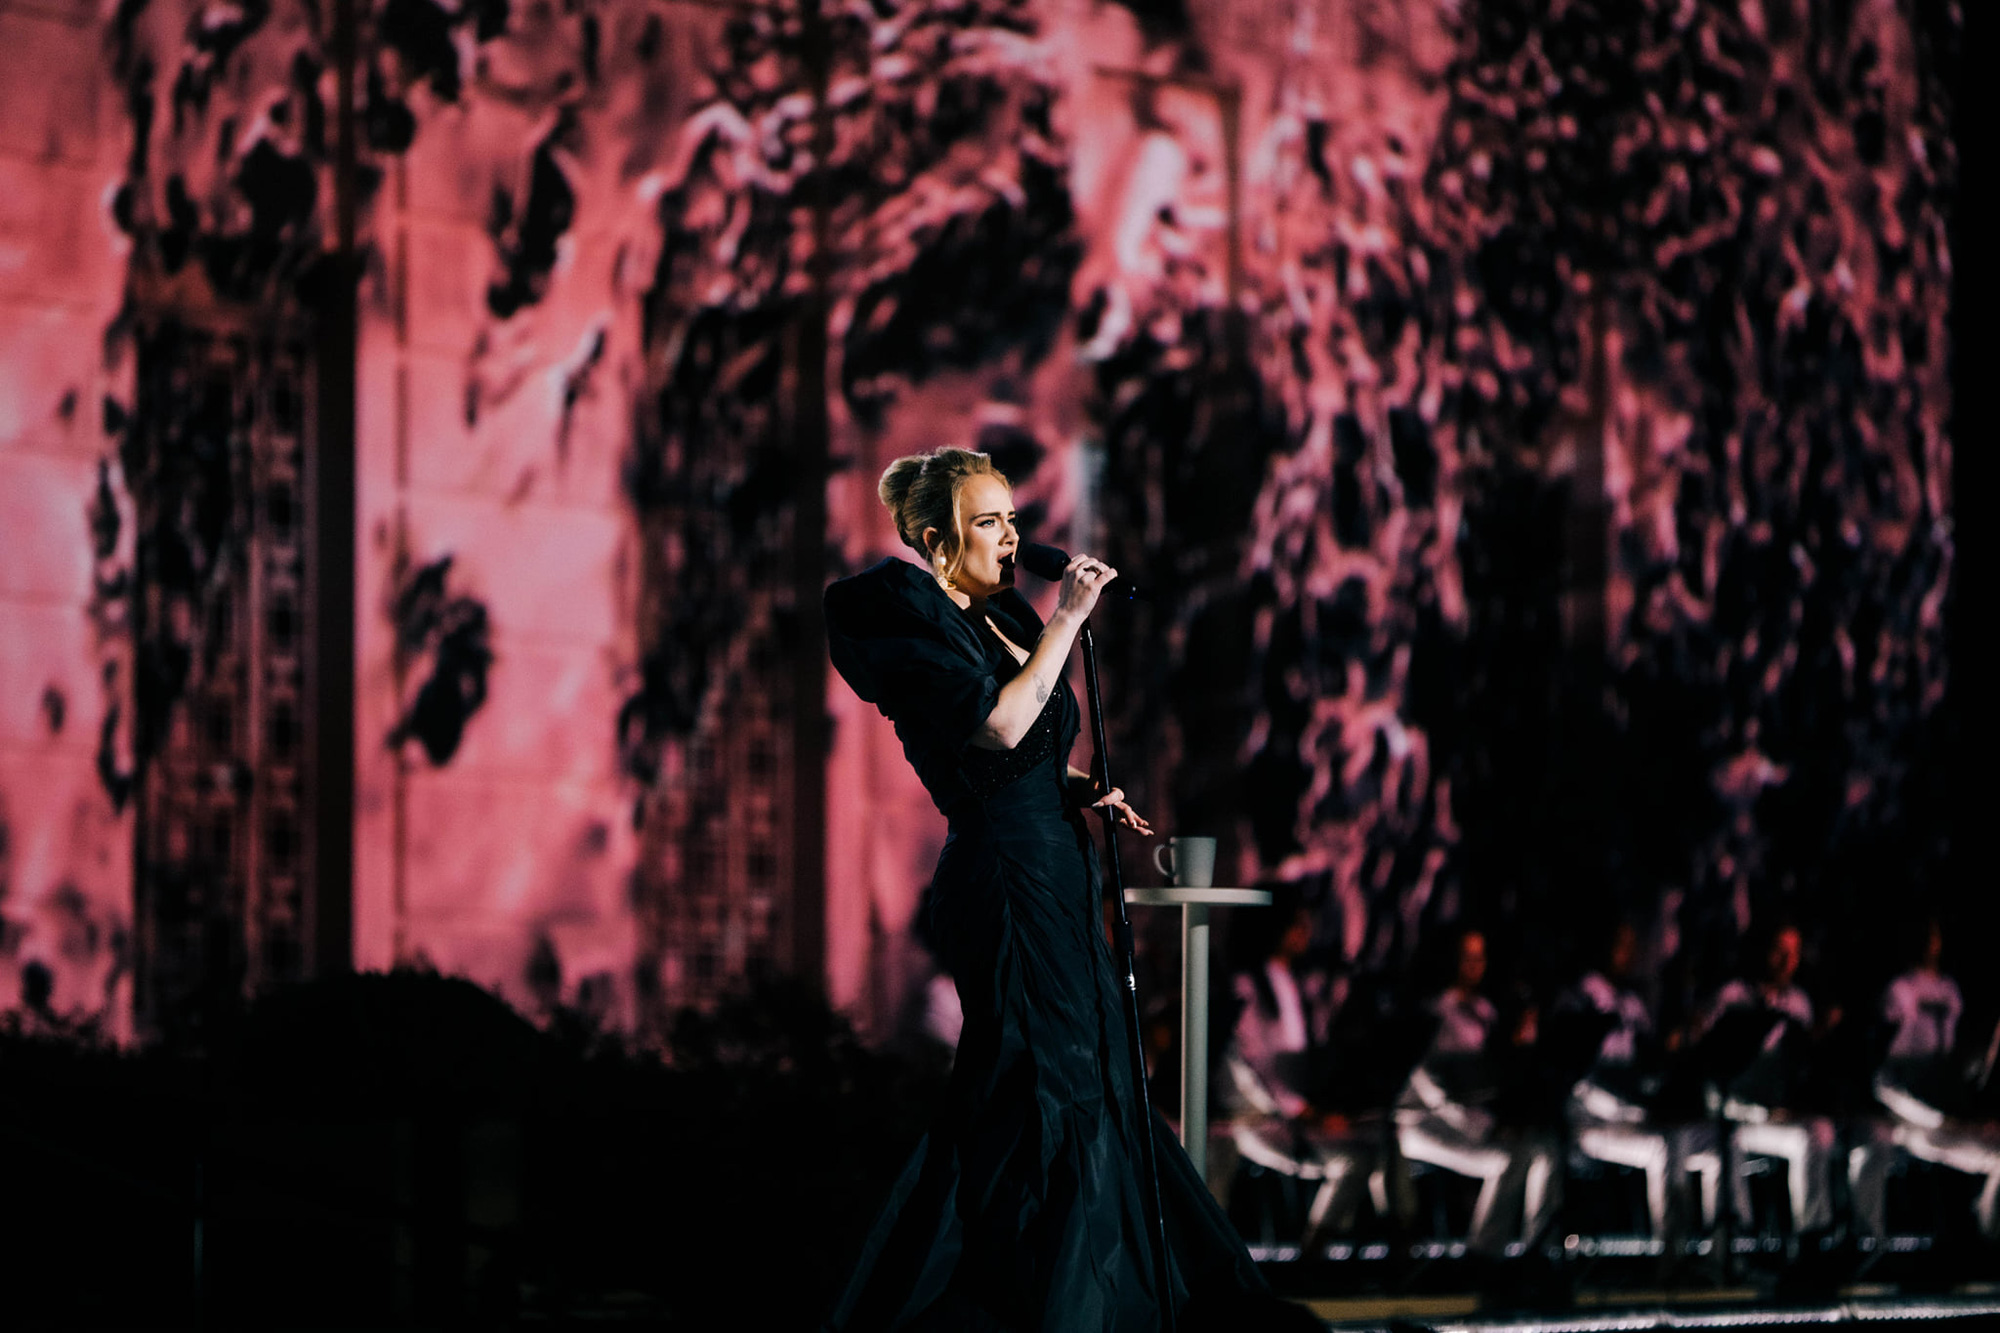 Siêu concert của Adele: 3 ca khúc mới, bà trùm Oprah Winfrey dẫn dắt, dàn sao hạng A Hollywood làm khán giả và 1 màn cầu hôn bất ngờ! - Ảnh 2.